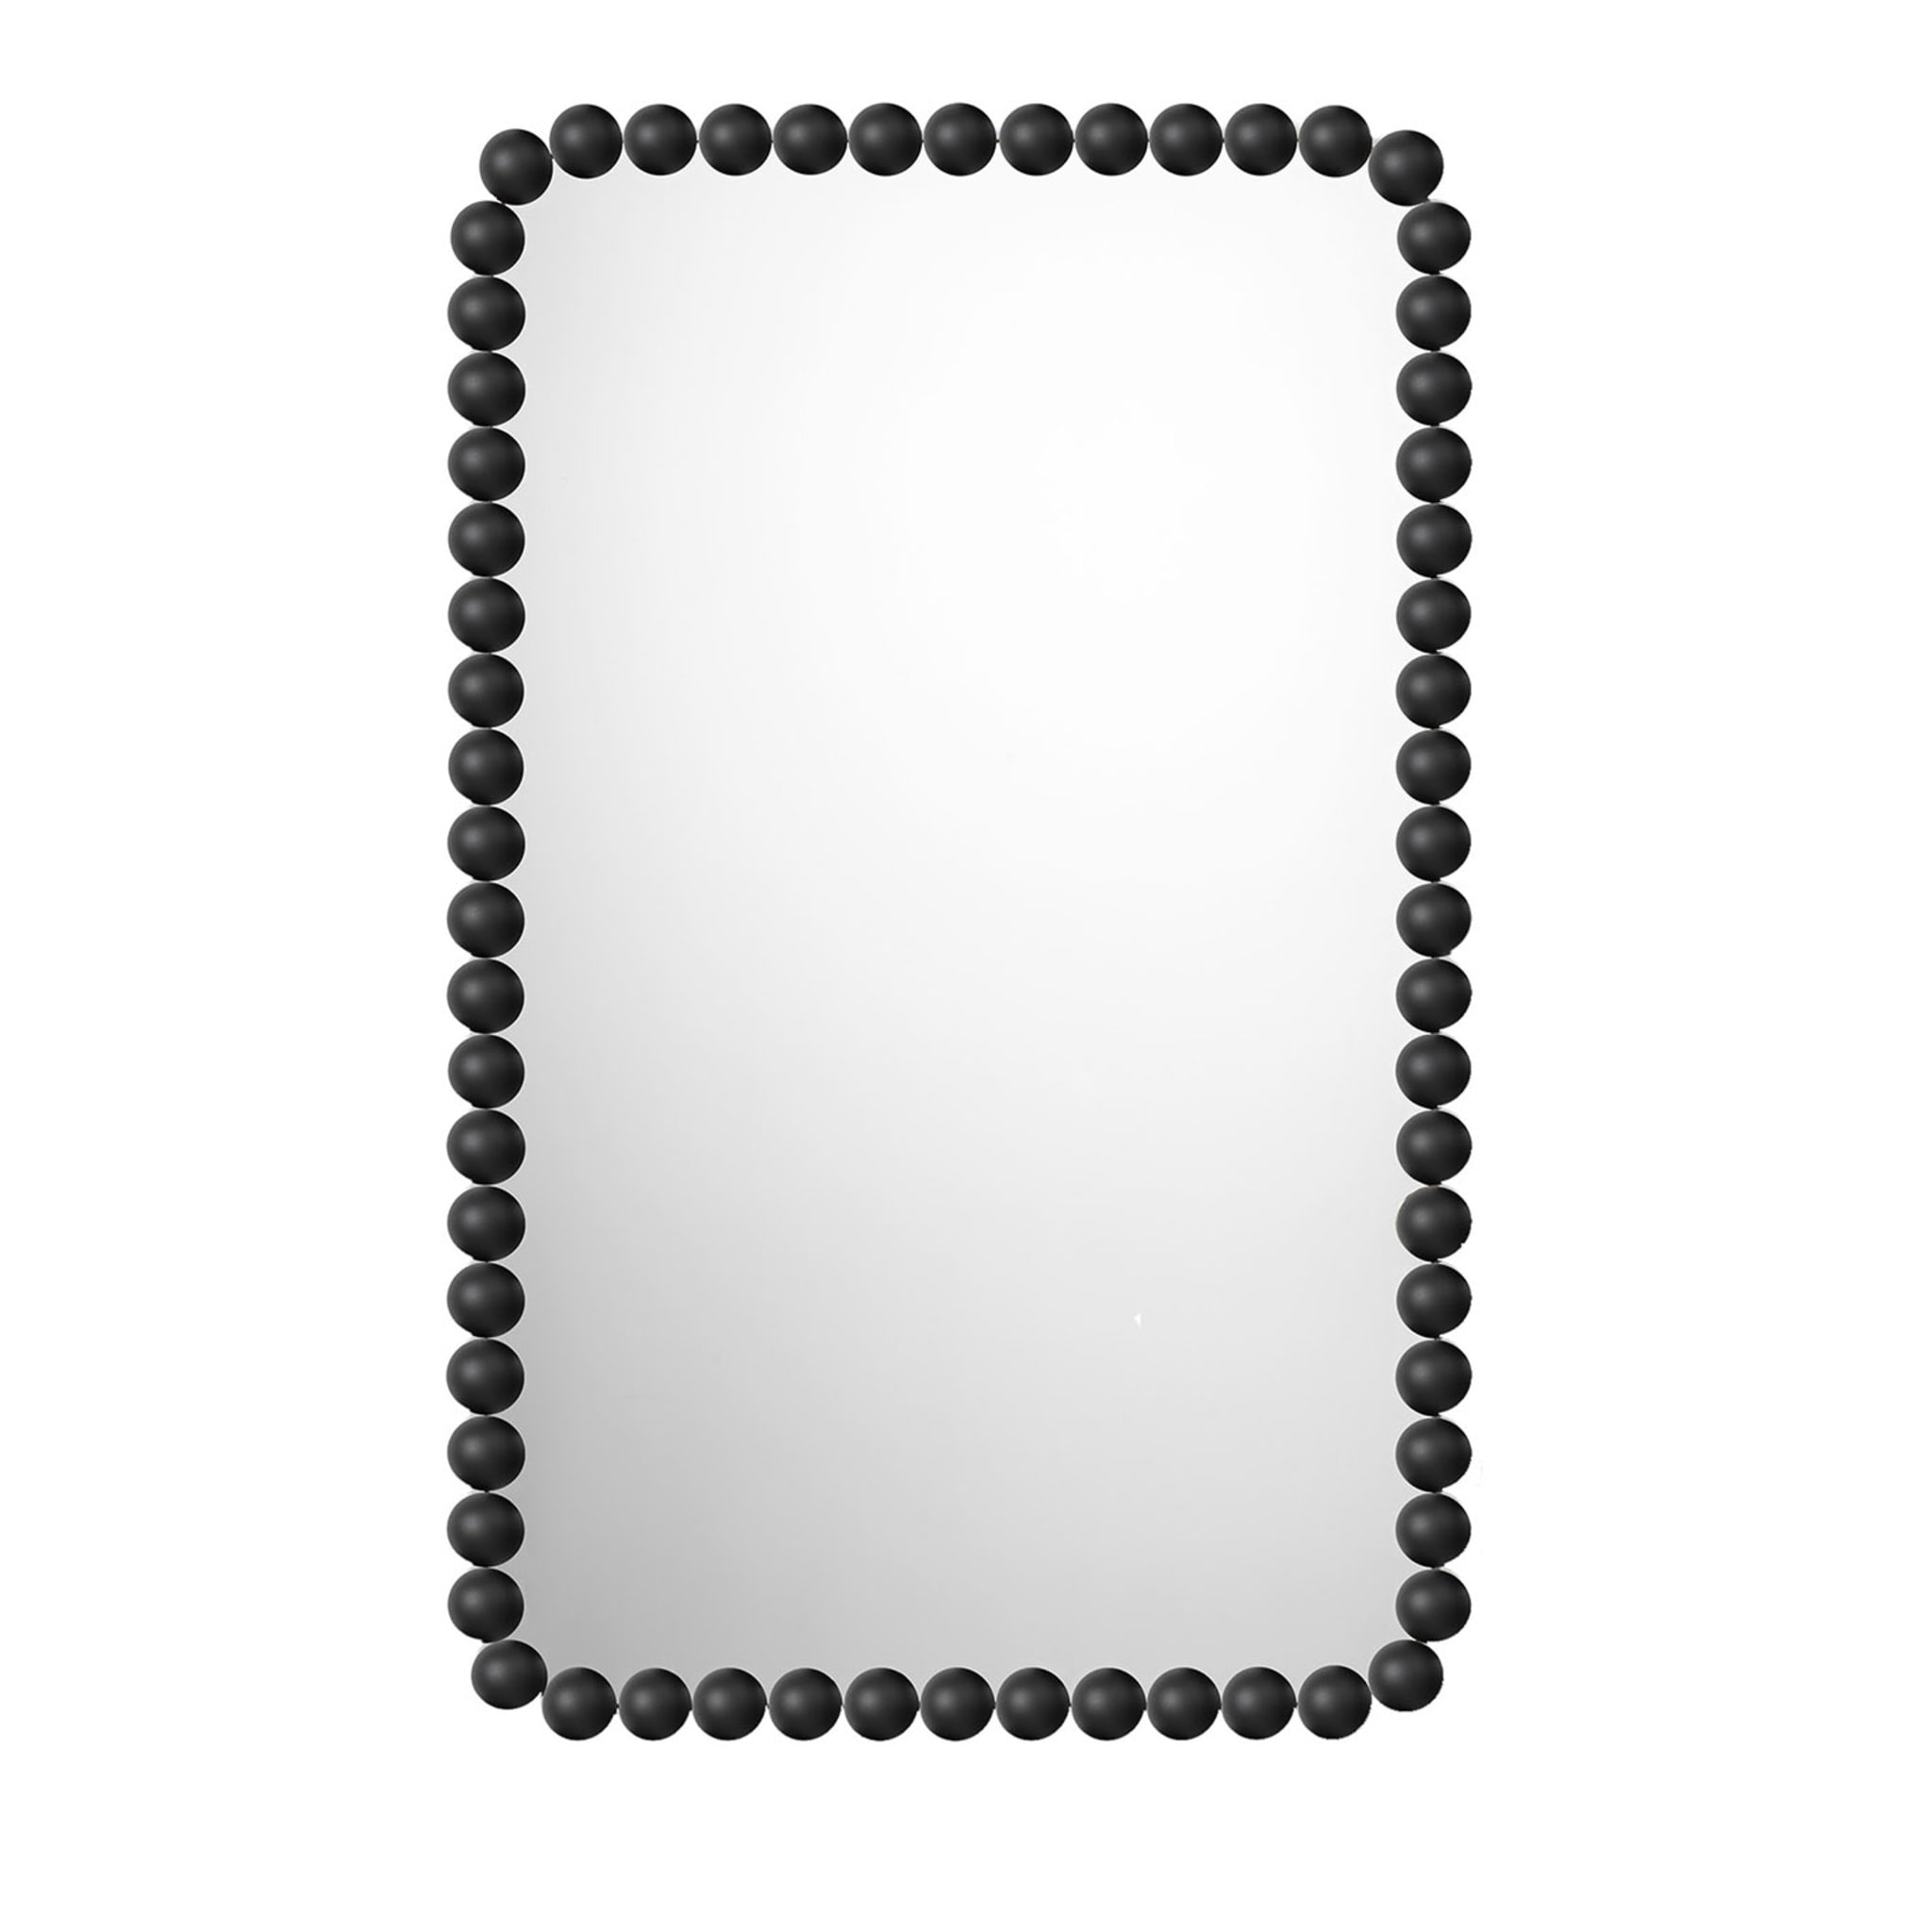 Gioiello Rechteckiger kleiner schwarzer spiegel by Nika Zupanc - Hauptansicht